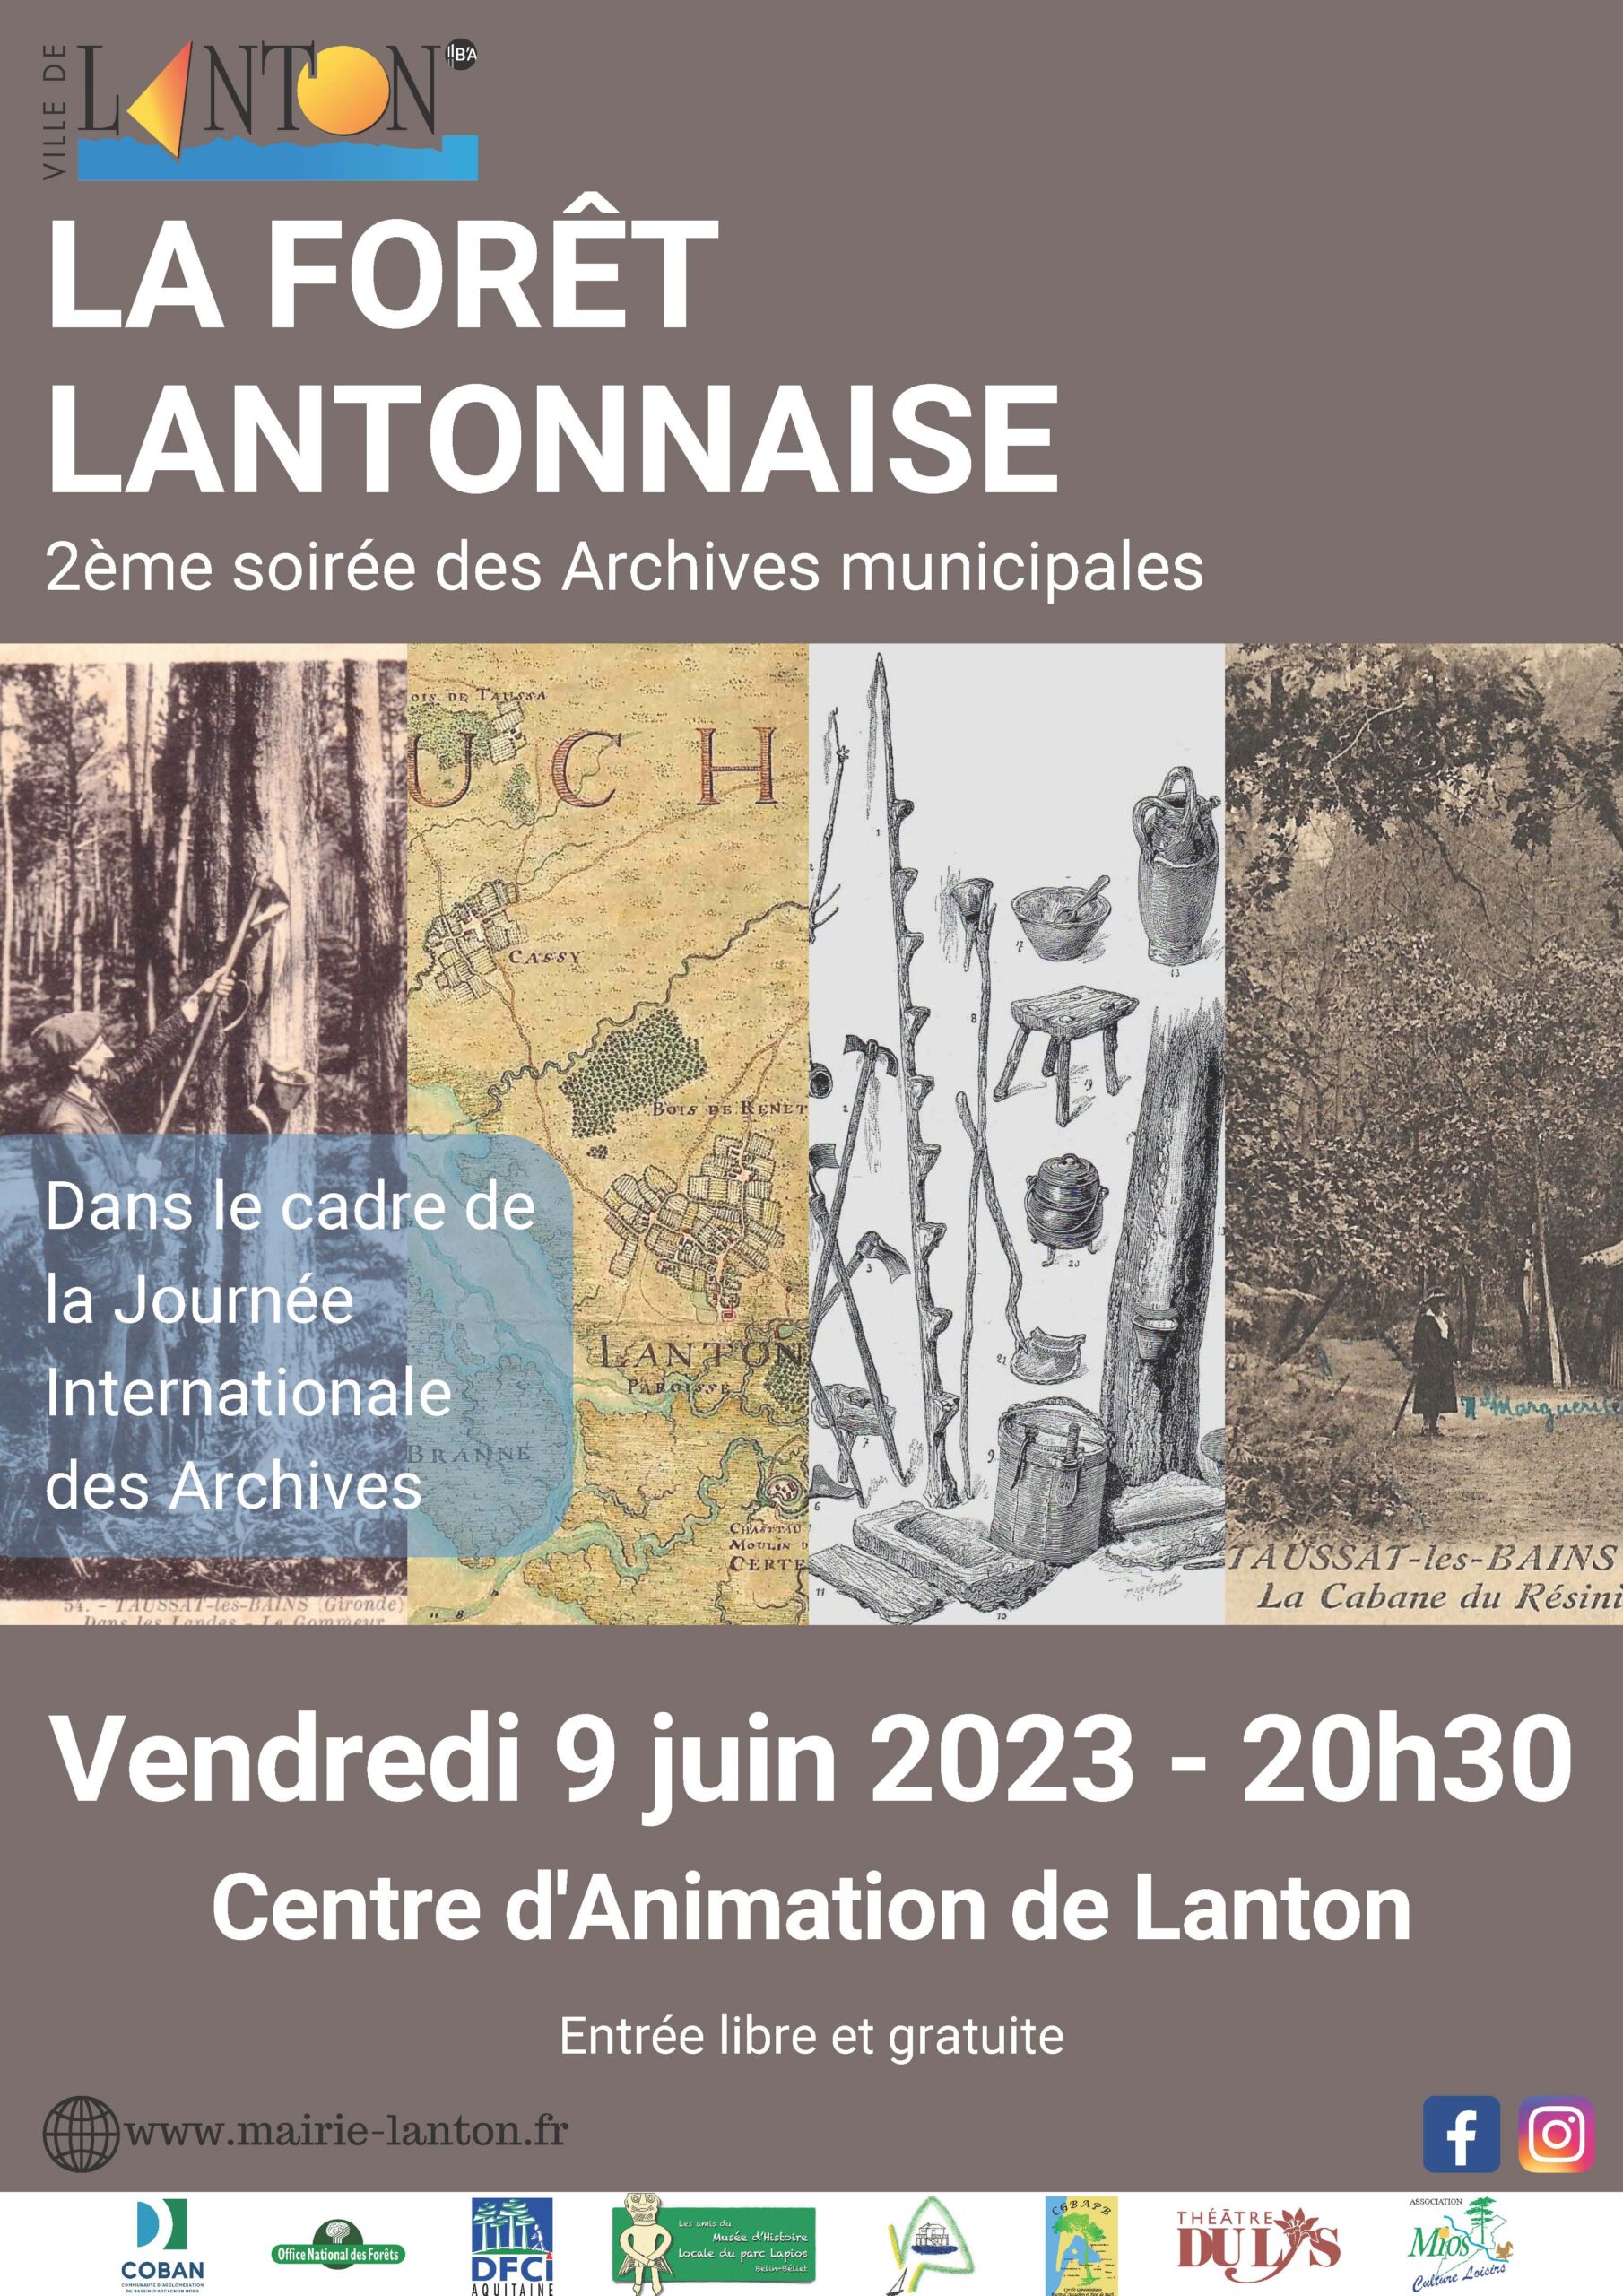 2e Soirée des Archives municipales à Lanton le 9 juin 2023 à 20h30 - La forêt lantonnaise